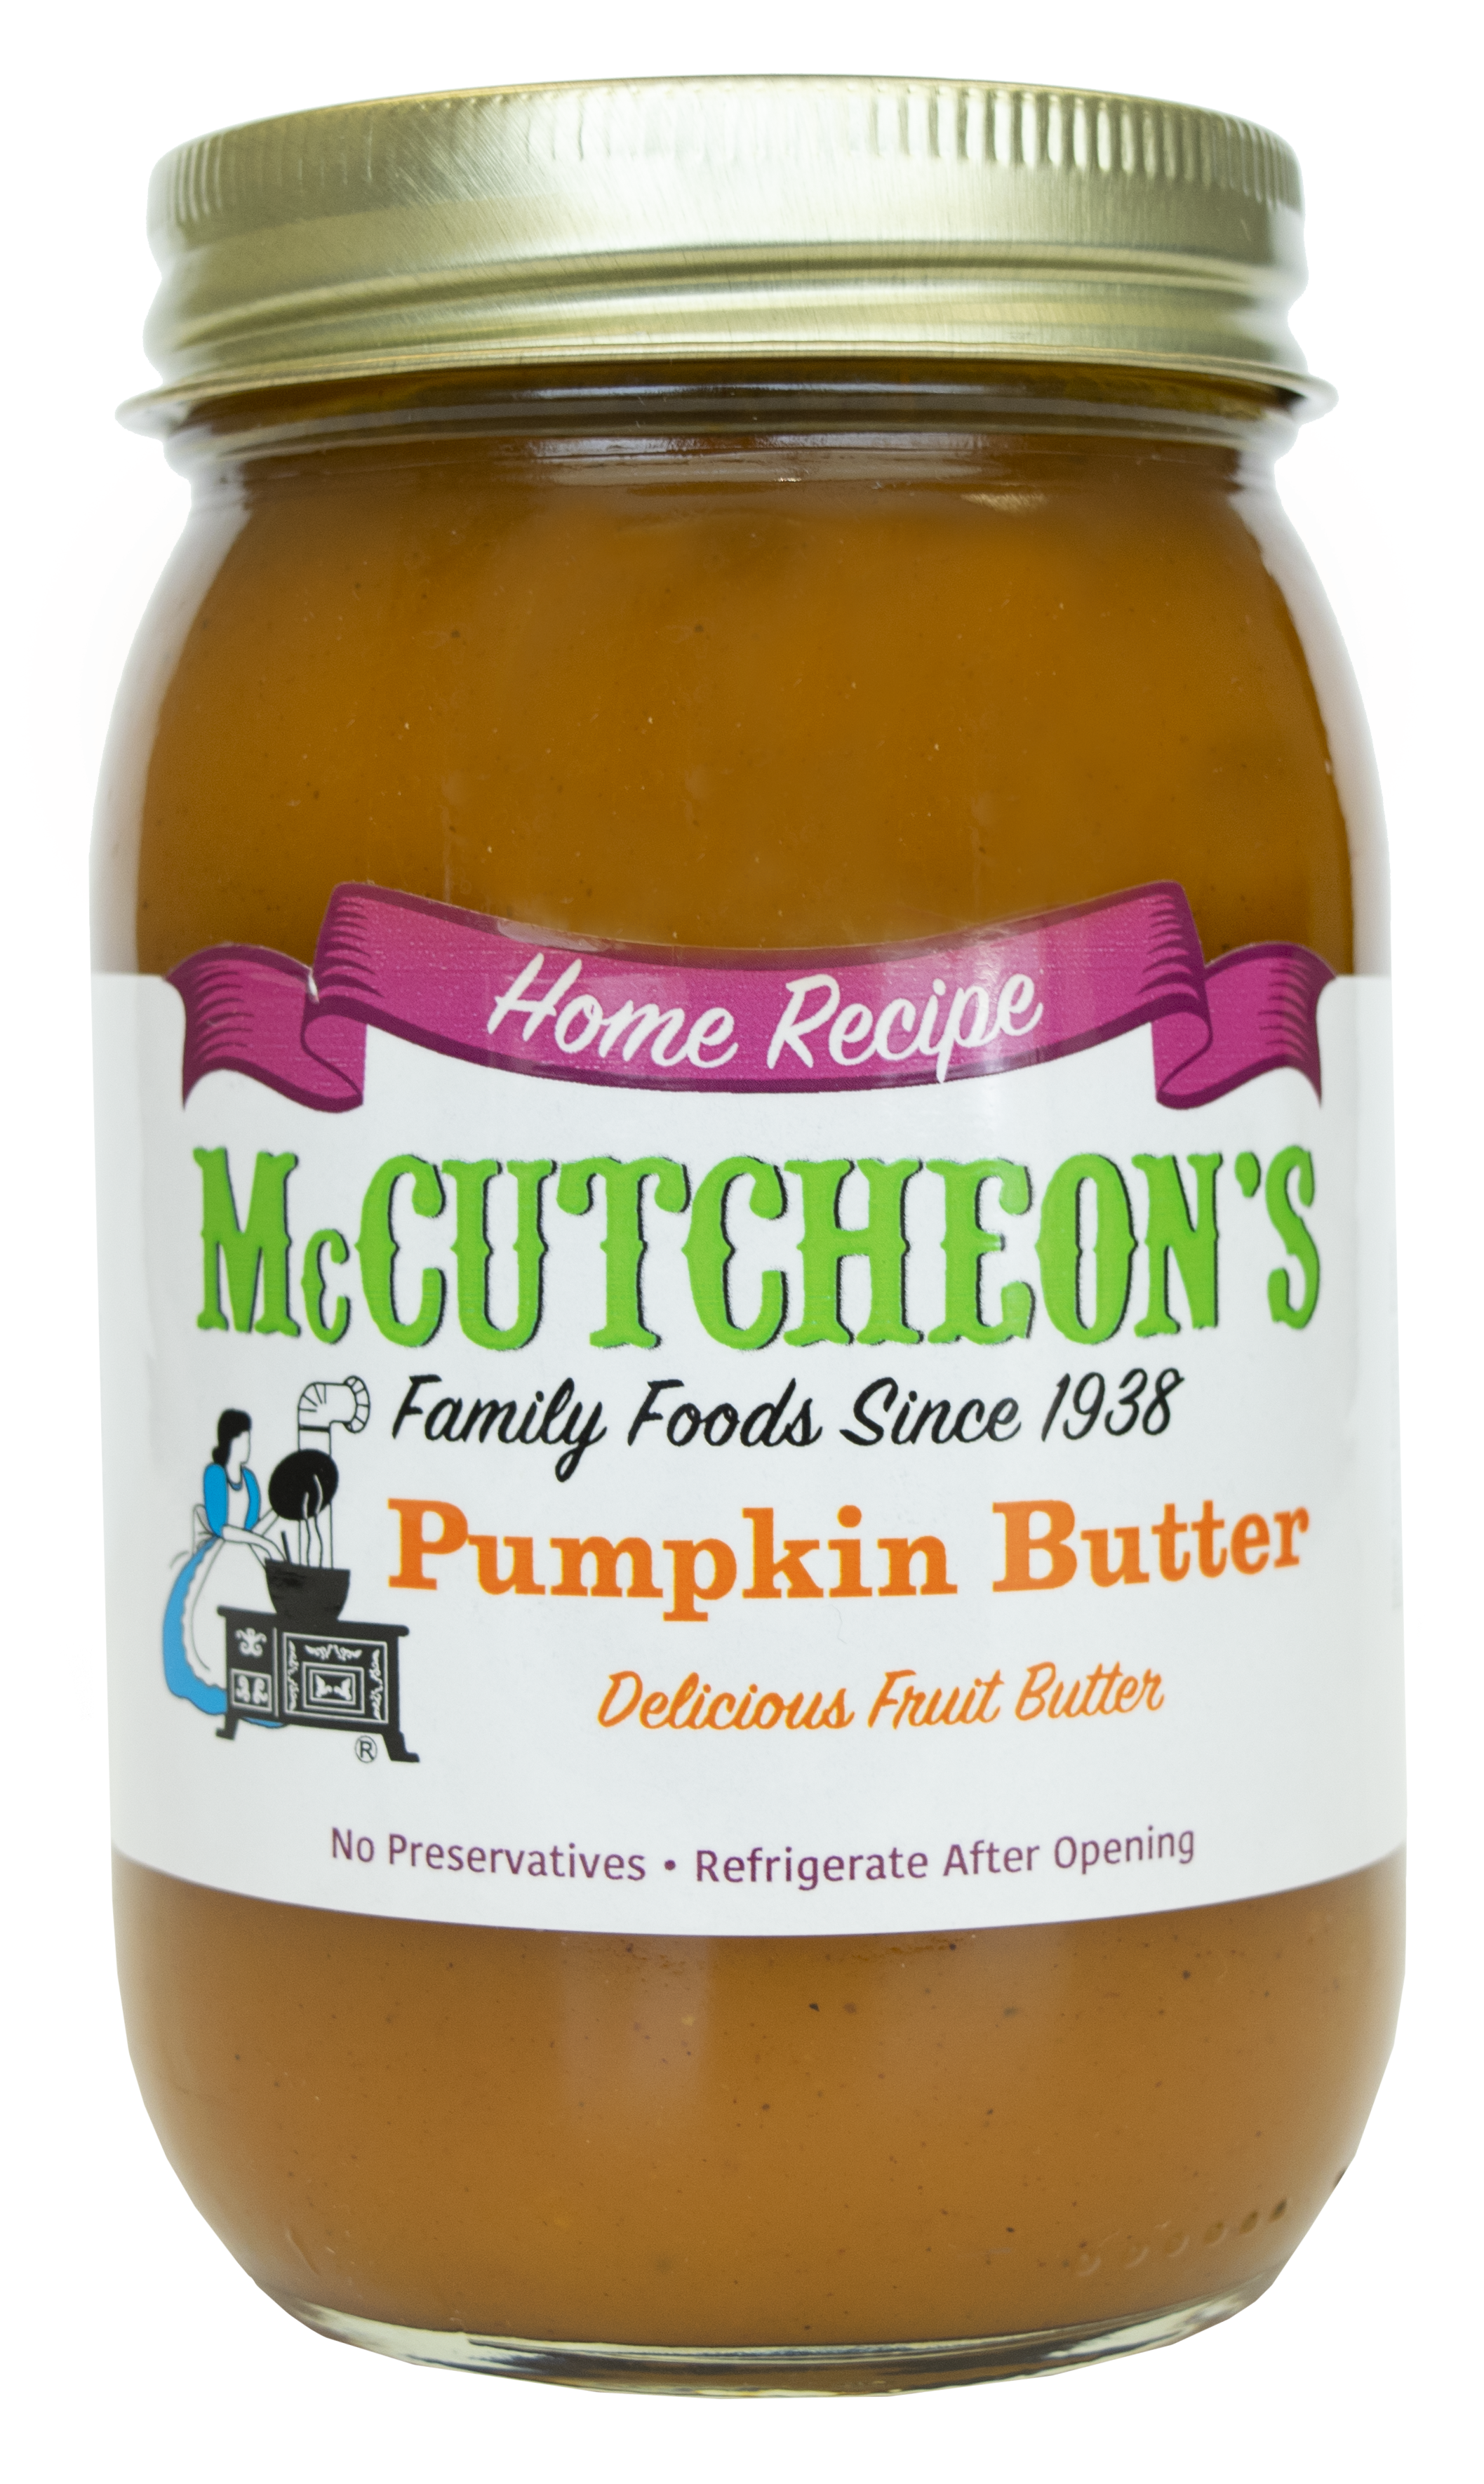 McCutcheon's Home Recipe Pumpkin Butter Jar